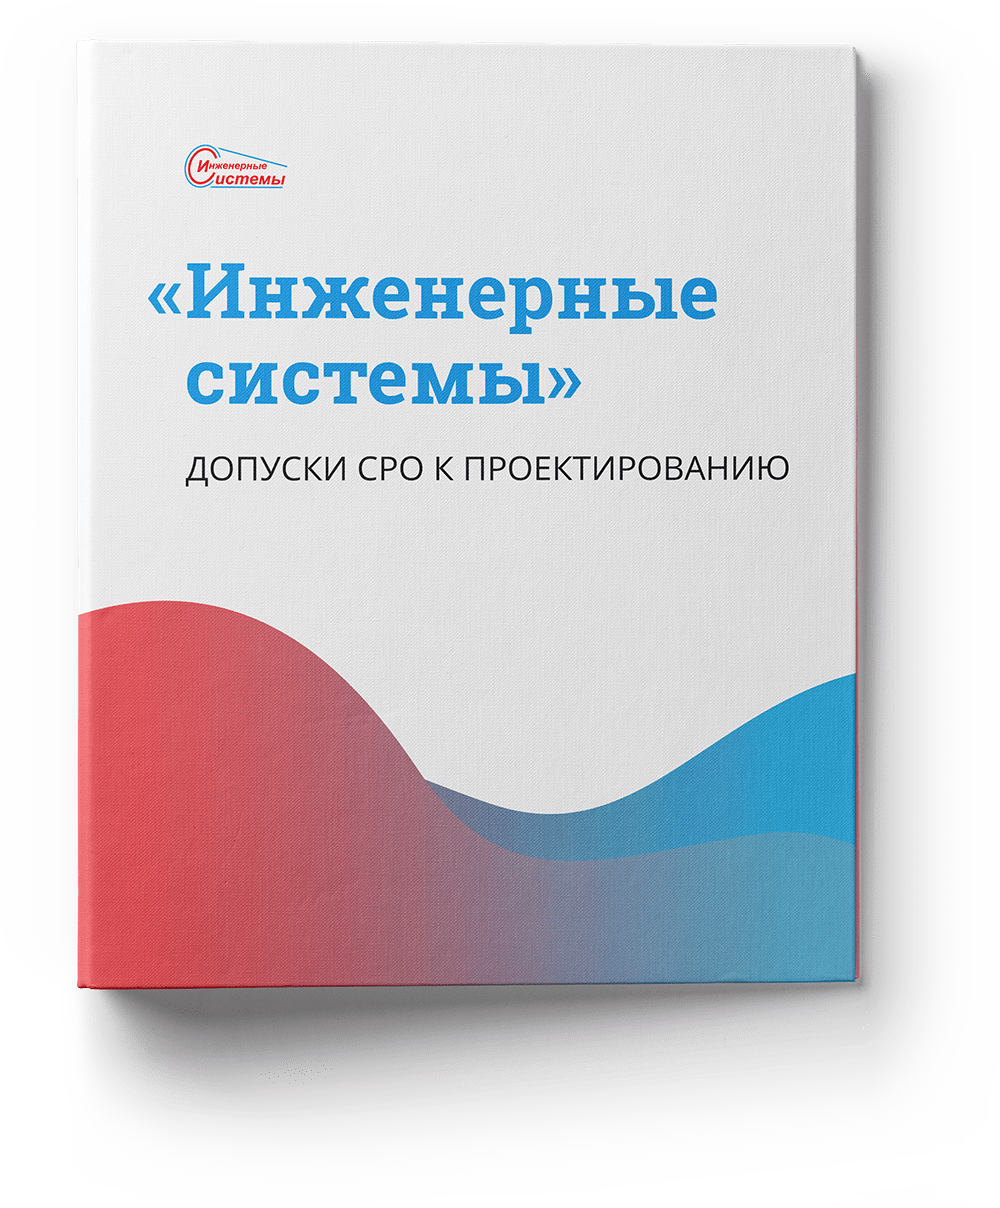 Допуски СРО к проектирование ООО "Инженерные системы"